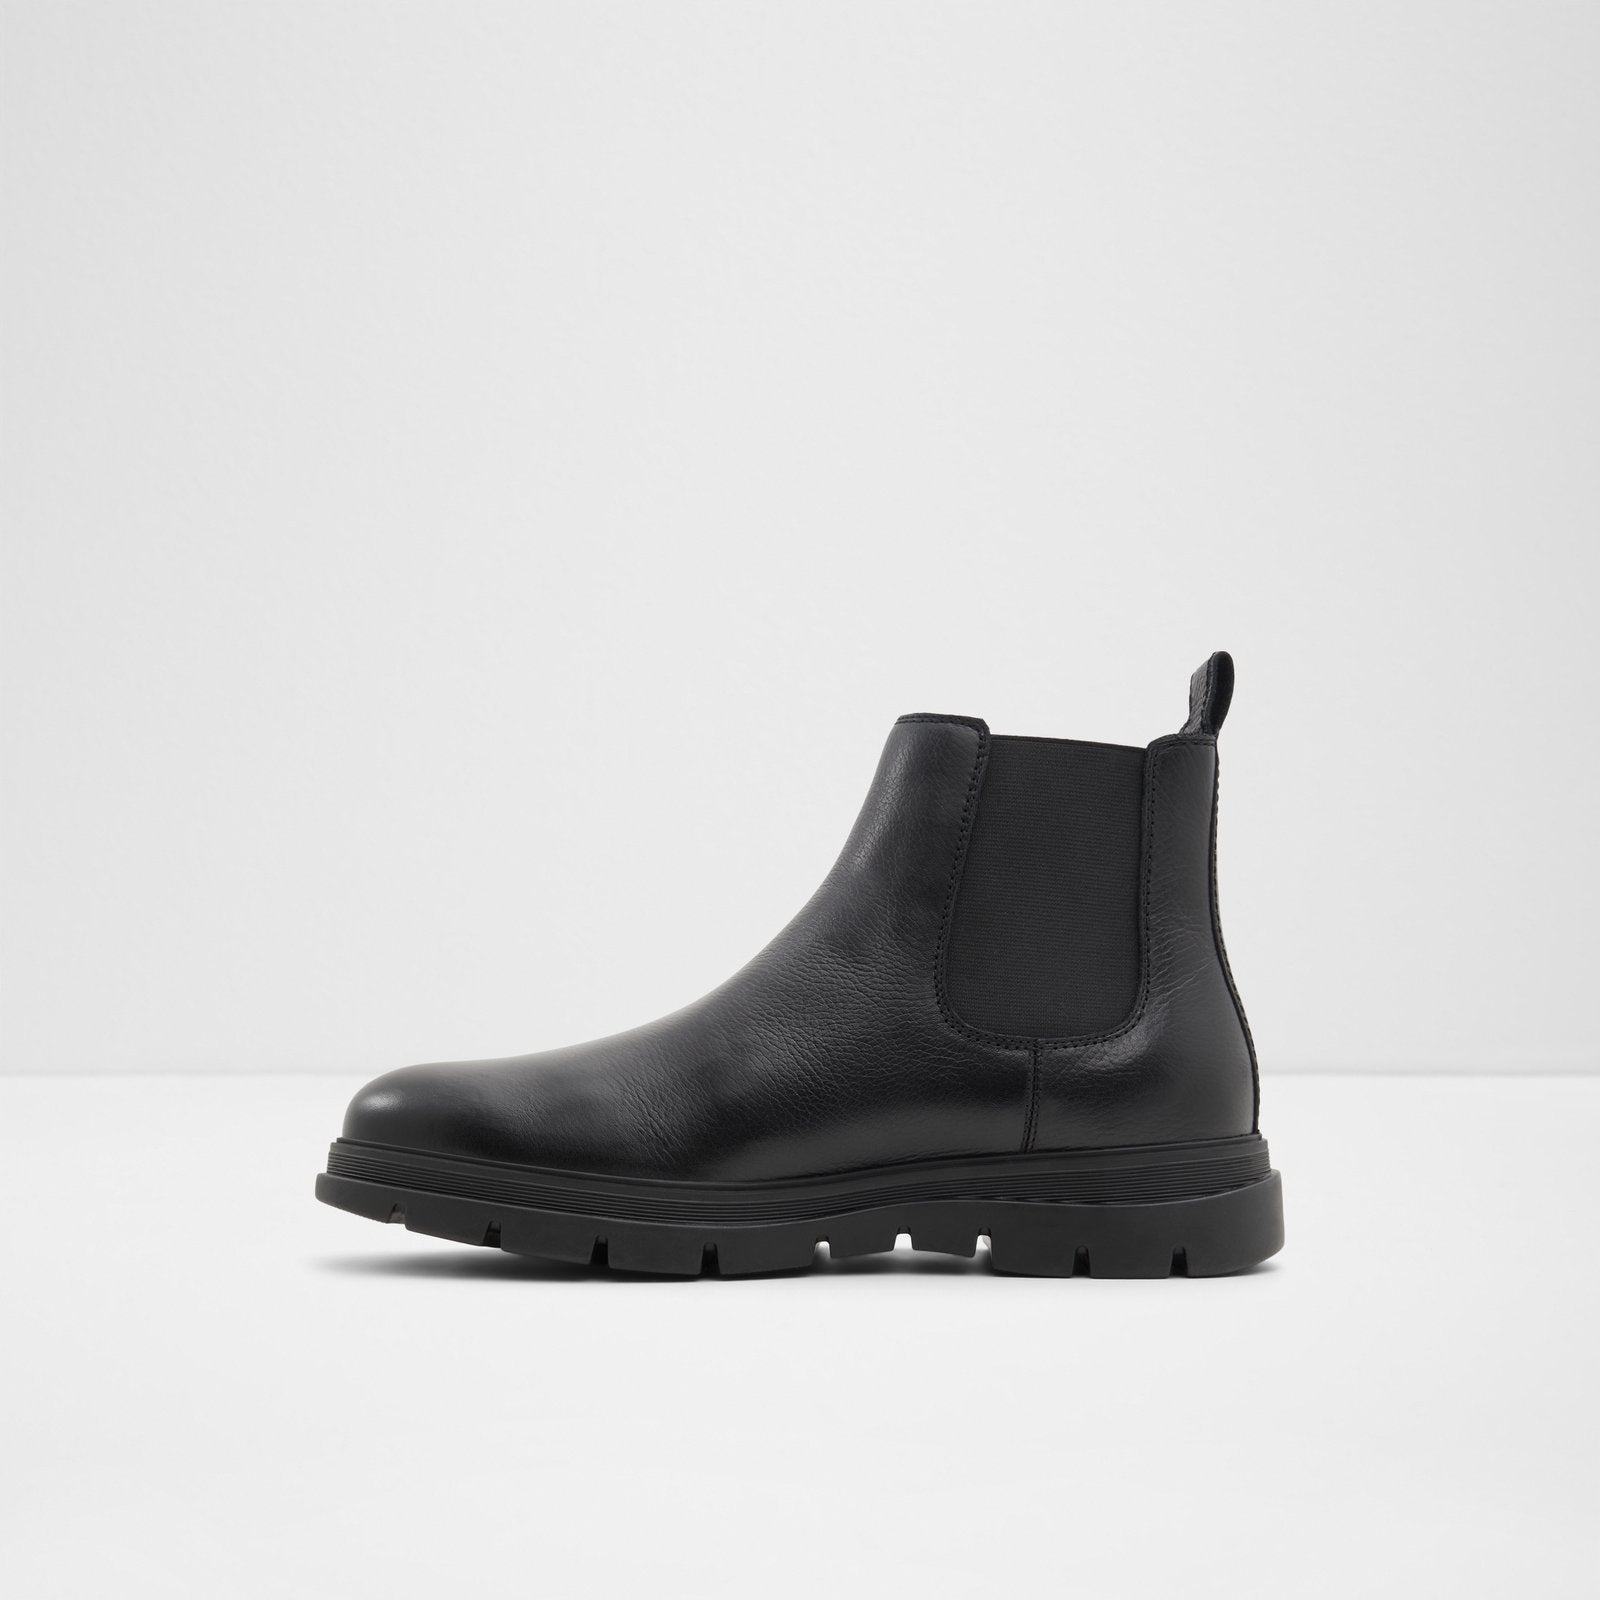 Weannon Men Shoes - Black - ALDO KSA